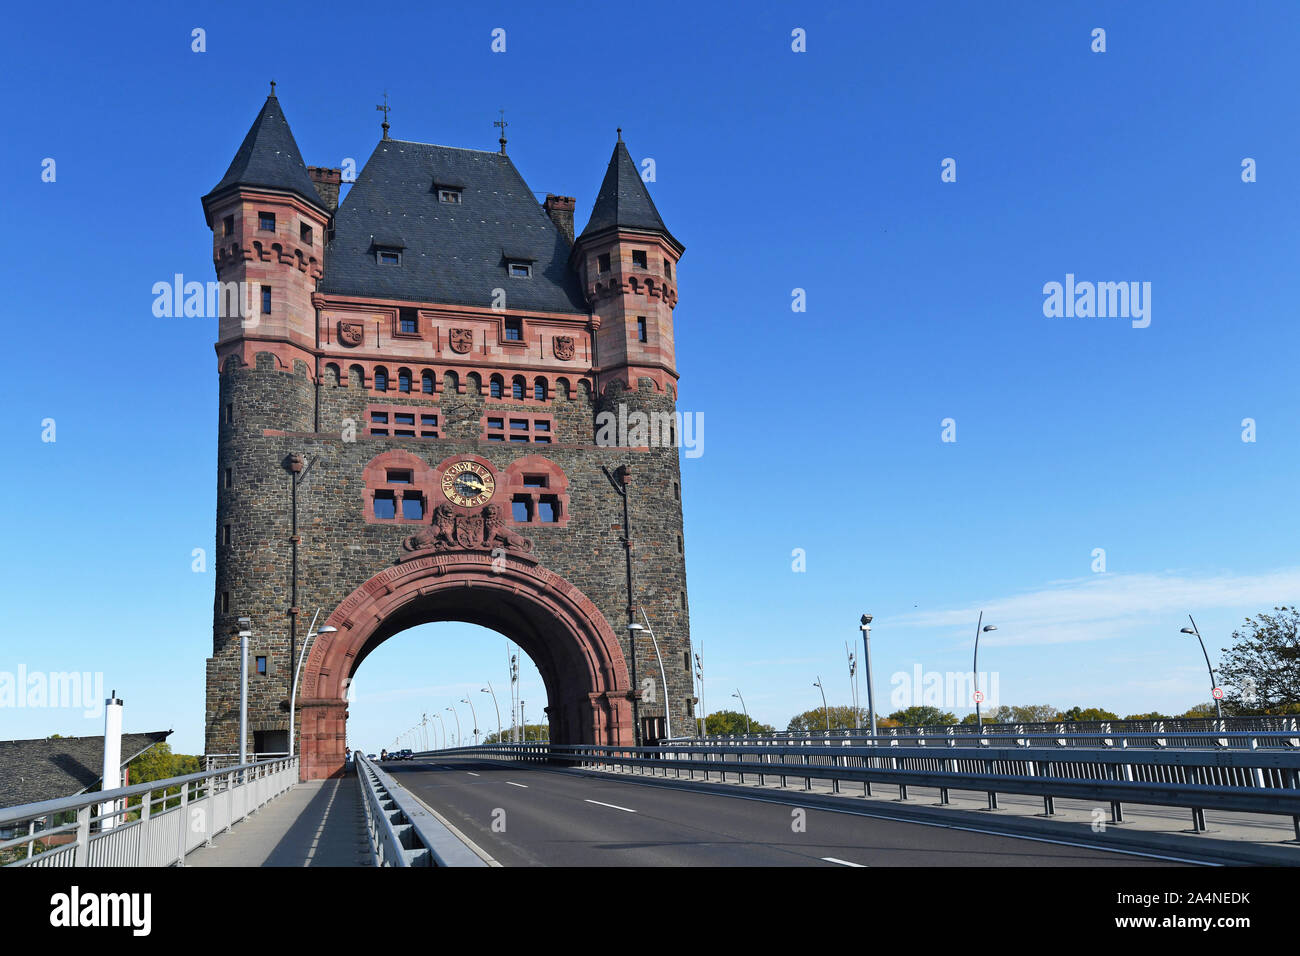 Monumento cultural histórico hito de la torre llamada "Nibelungenbrücke' o 'Nibelungentor' en el puente en la ciudad de Worms en Alemania Foto de stock